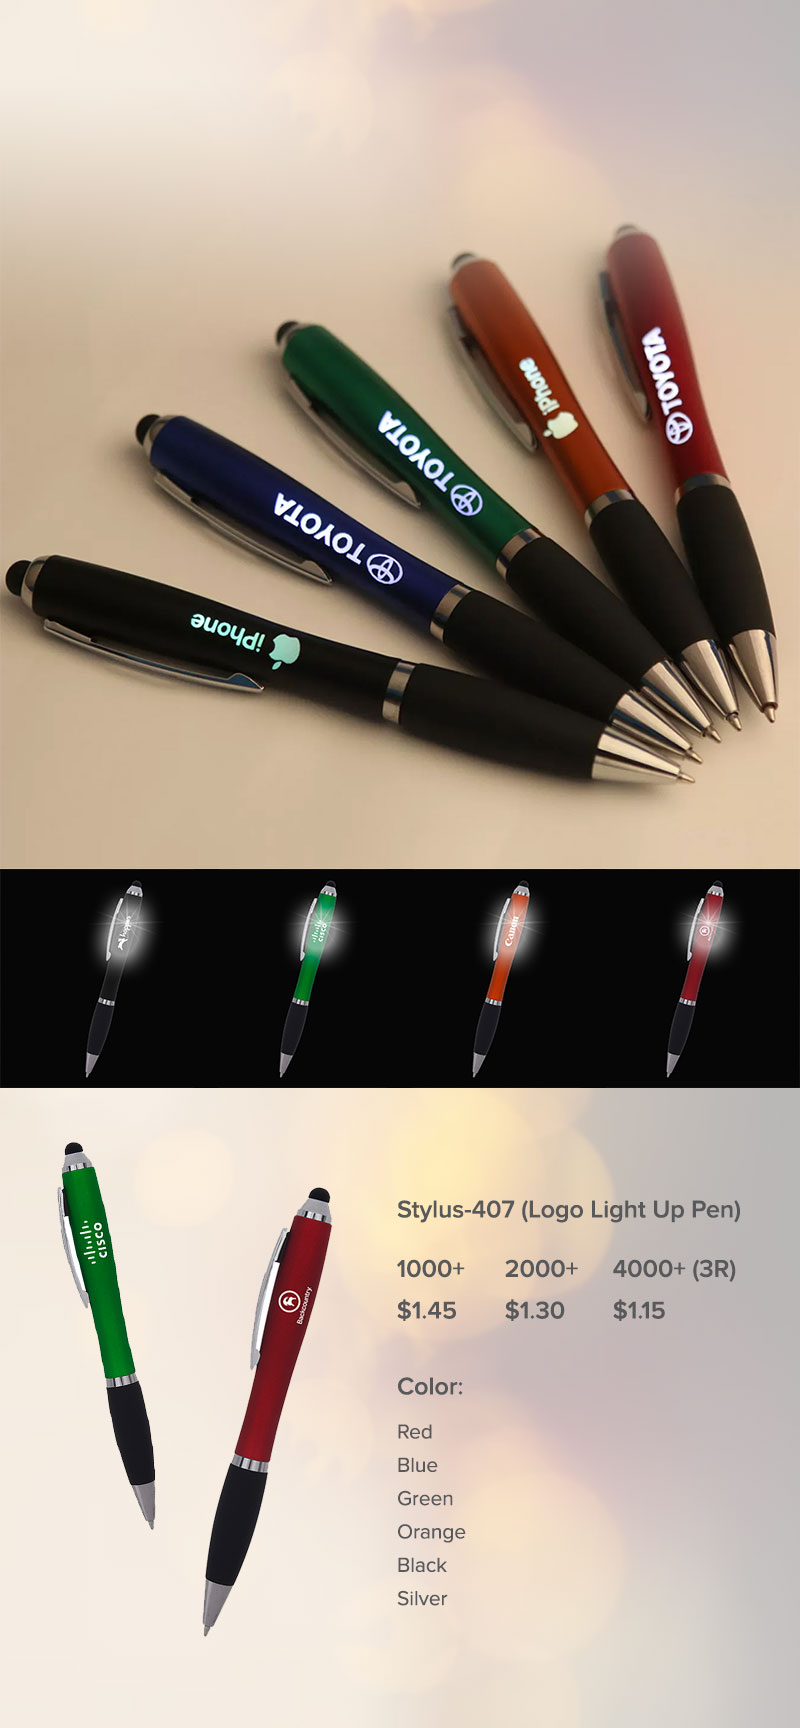 Lungsal’s Logo Light Up Pens